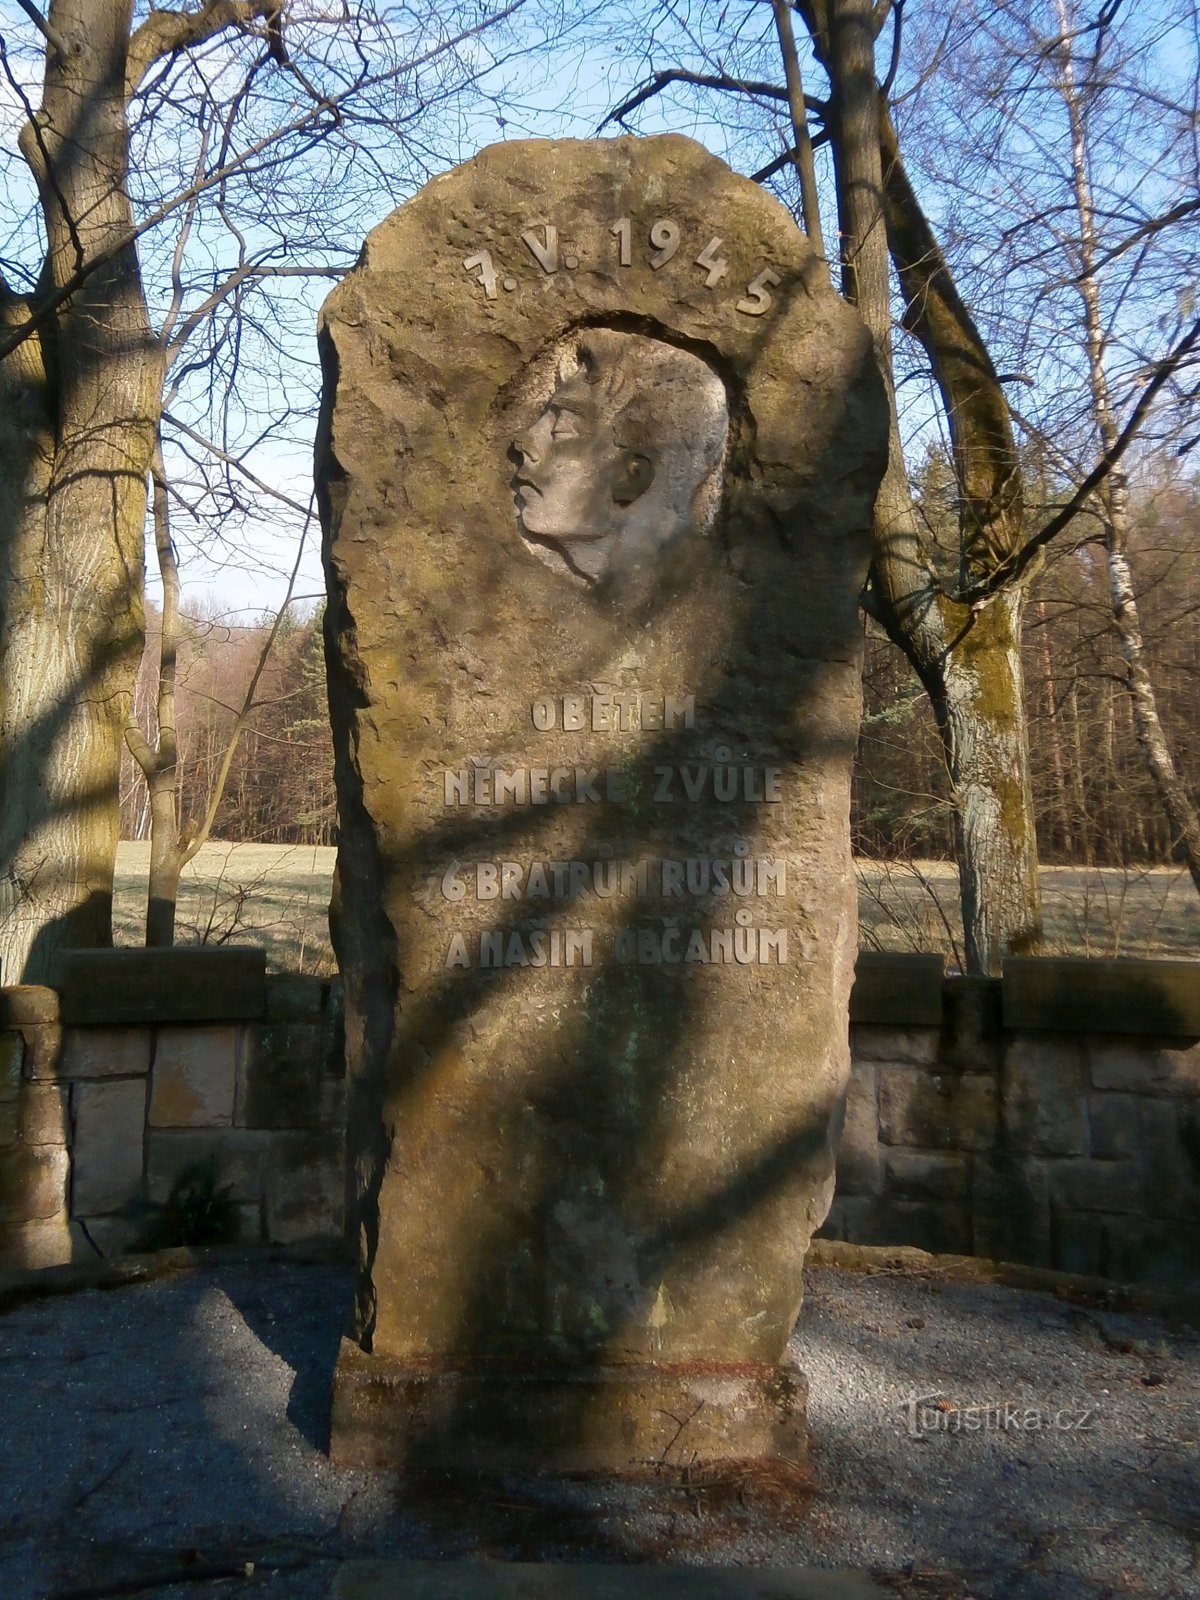 Monumento às vítimas da Segunda Guerra Mundial (Vysoká nad Labem, 2/24.3.2017/XNUMX)